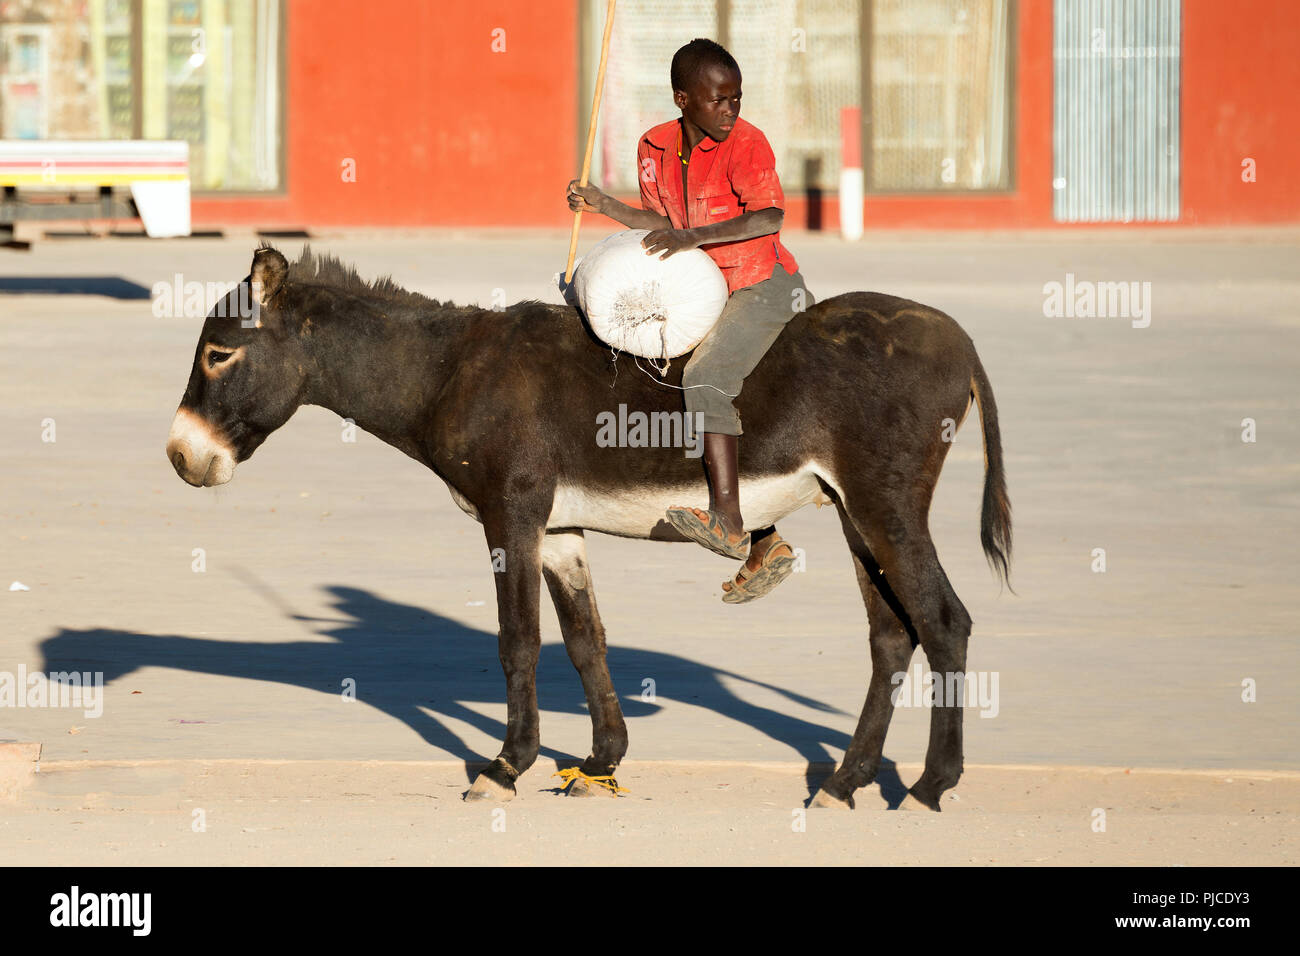 Junge sitzt auf Esel, Opuwo, Namibia, HERR: Nein, Junge sitzt auf Esel, HERR: Nein Stockfoto